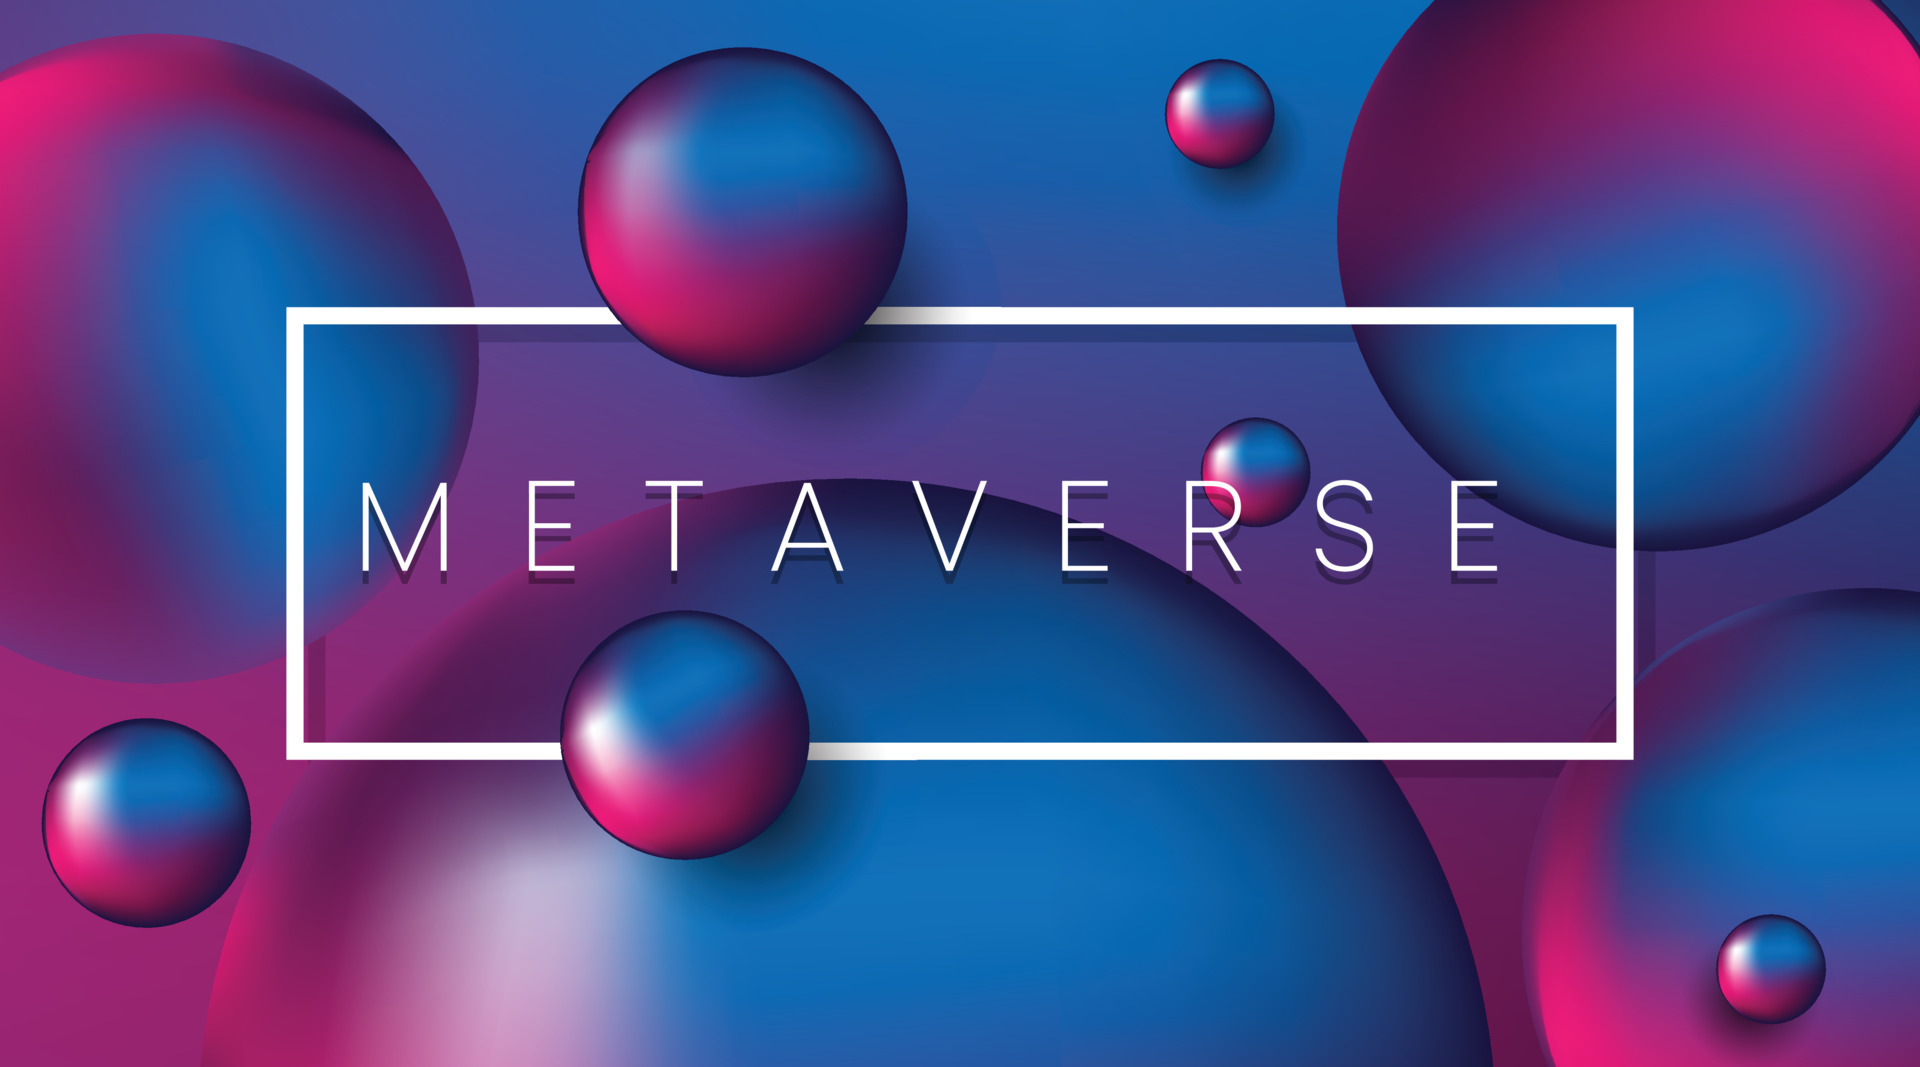 图片展示了多个紫红色调的3D球体，中间有一个带有“METAVERSE”字样的白色矩形框，整体给人一种科技感和未来感。